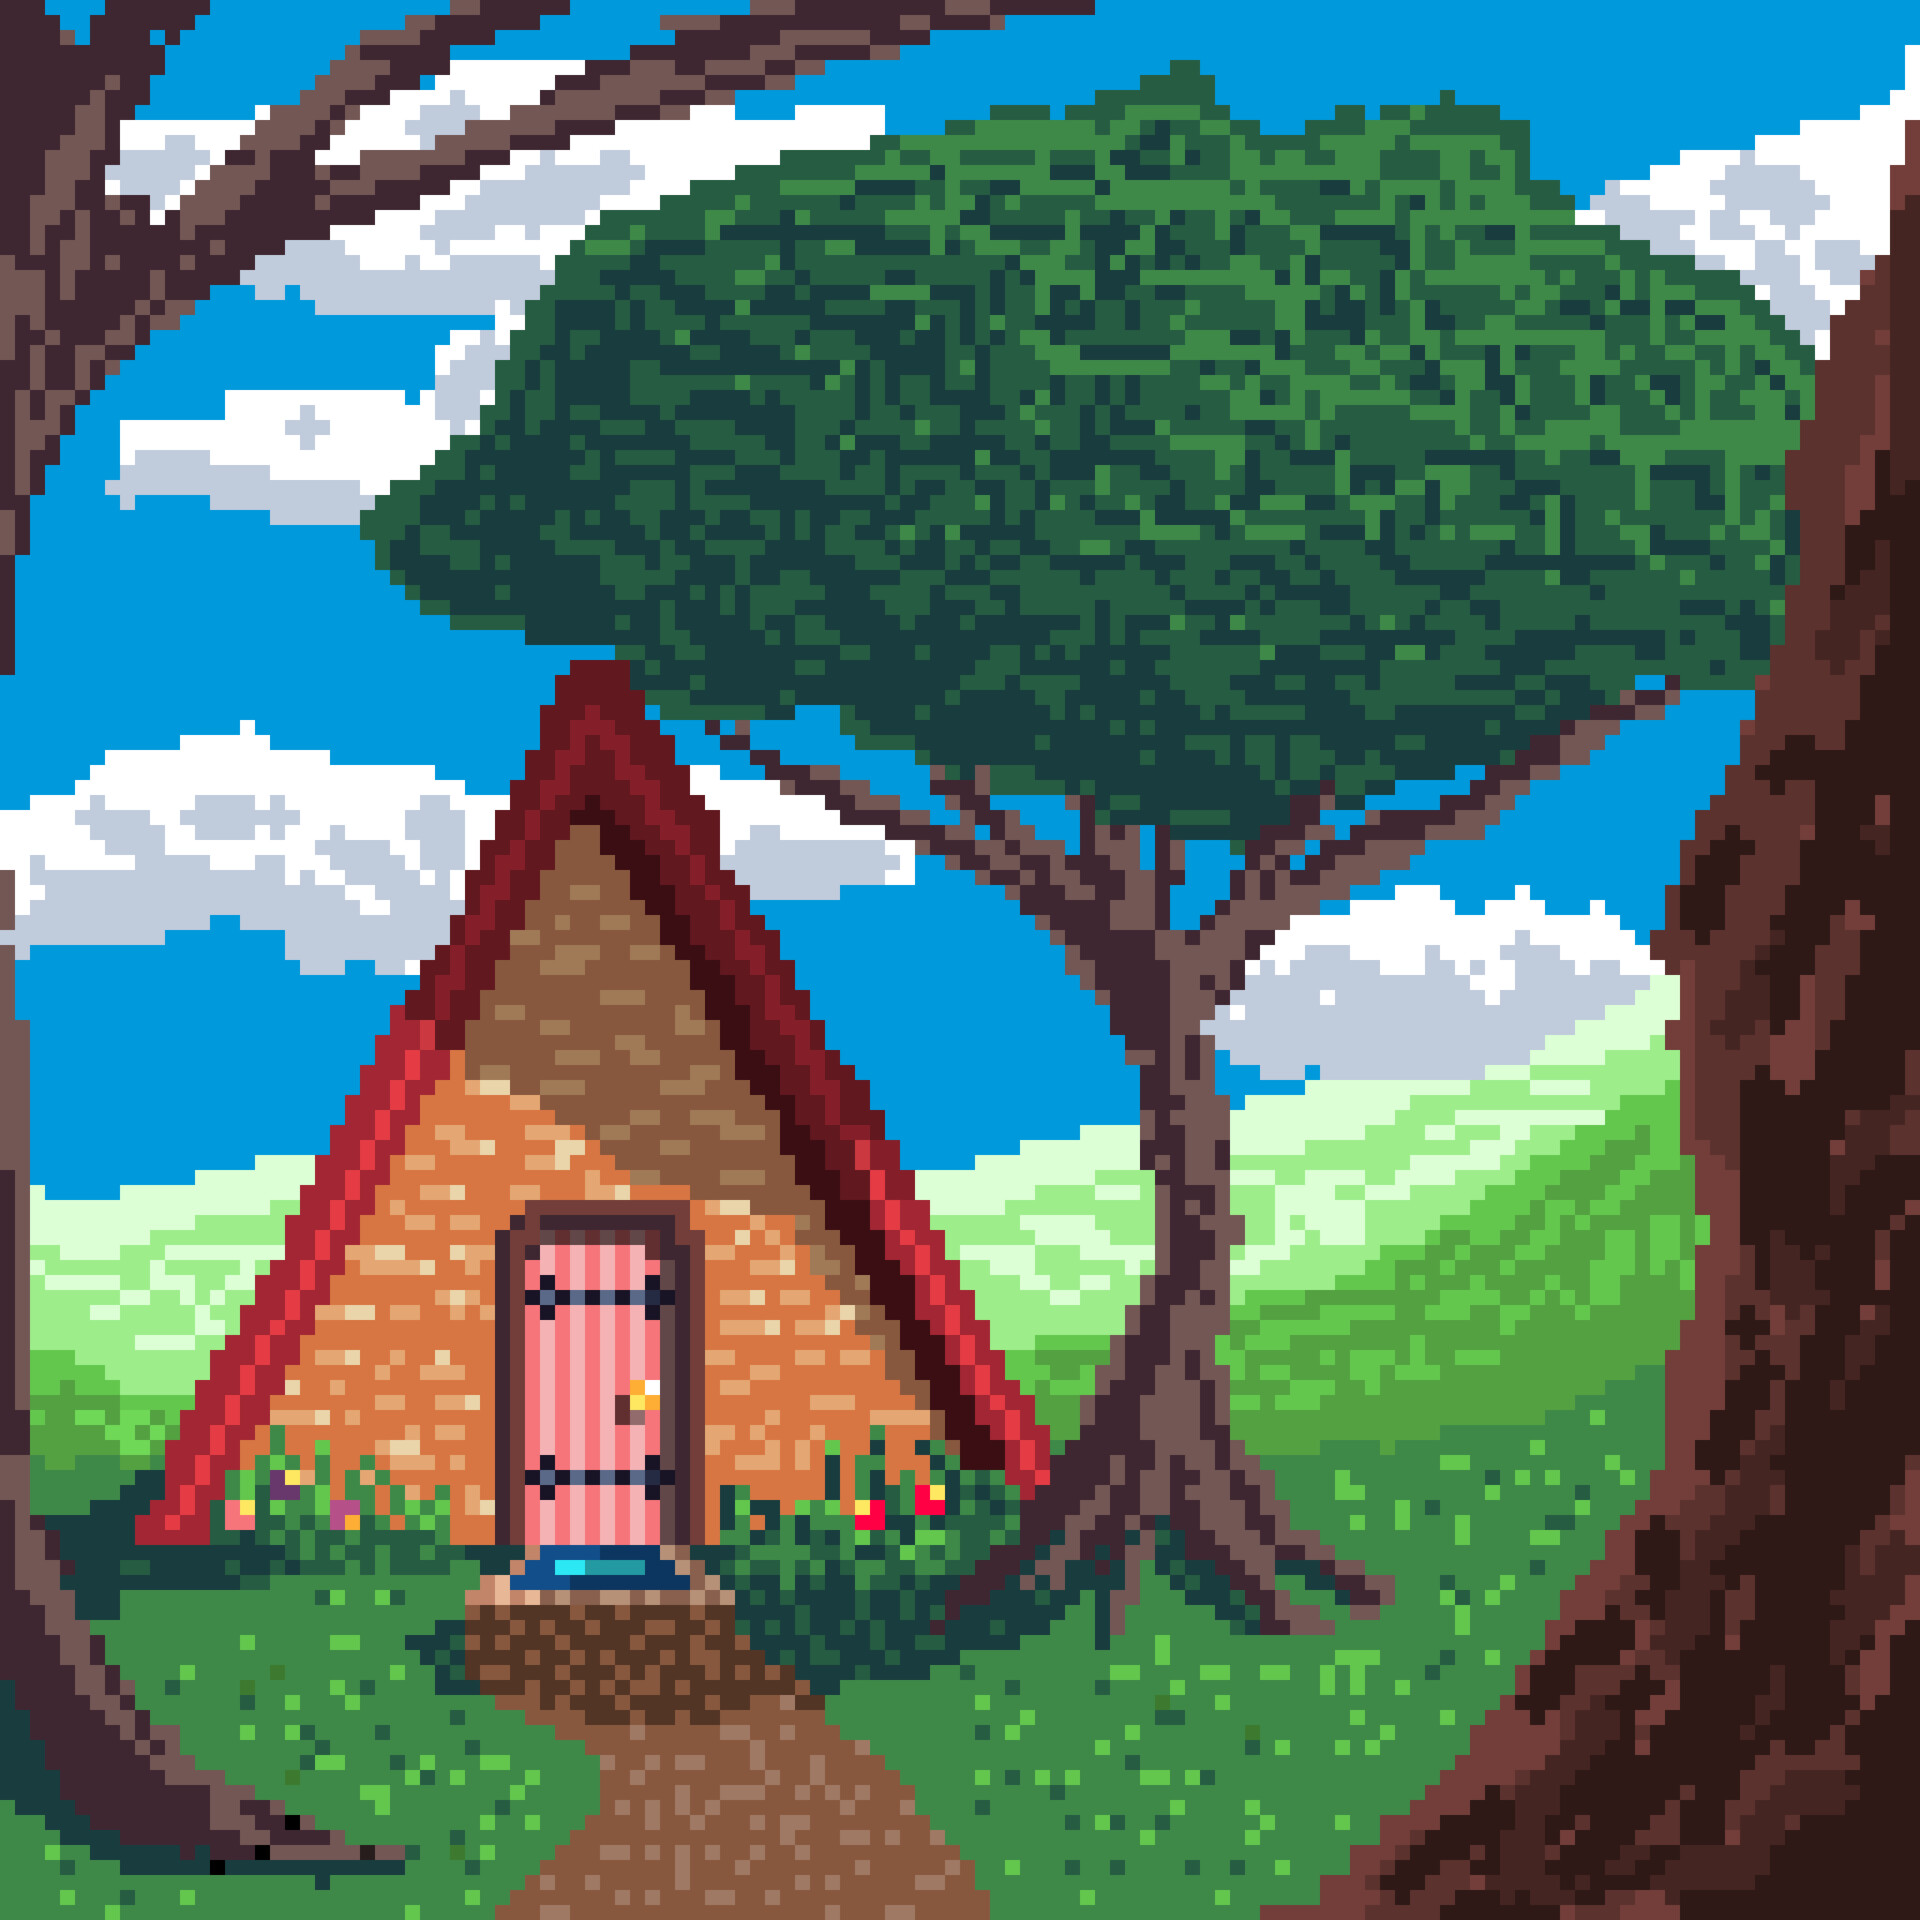 ArtStation - pixel art practice - little house in the hills